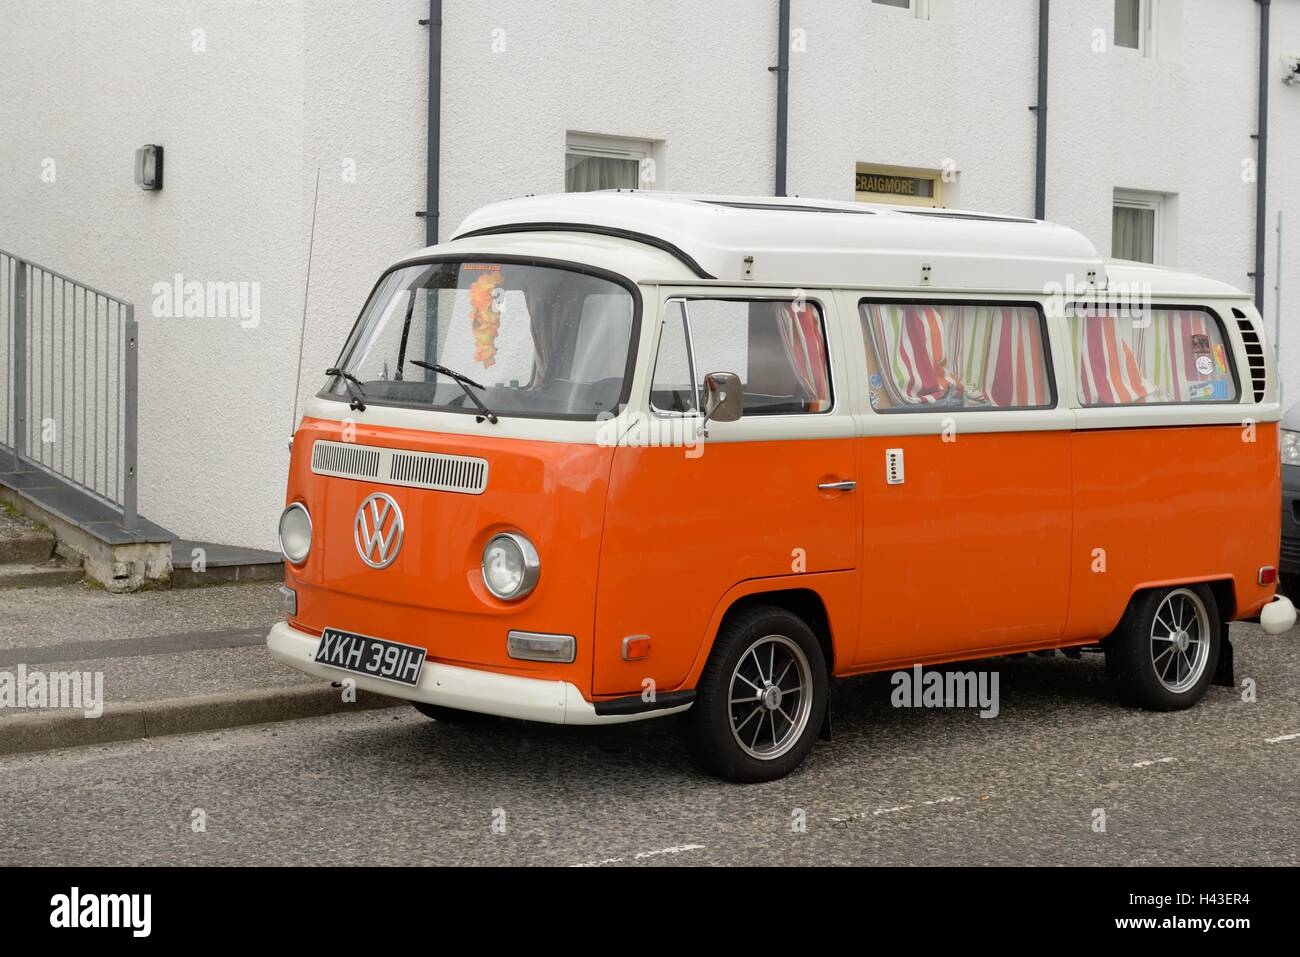 Orange Volkswagen camper van in Scotland, UK. Stock Photo